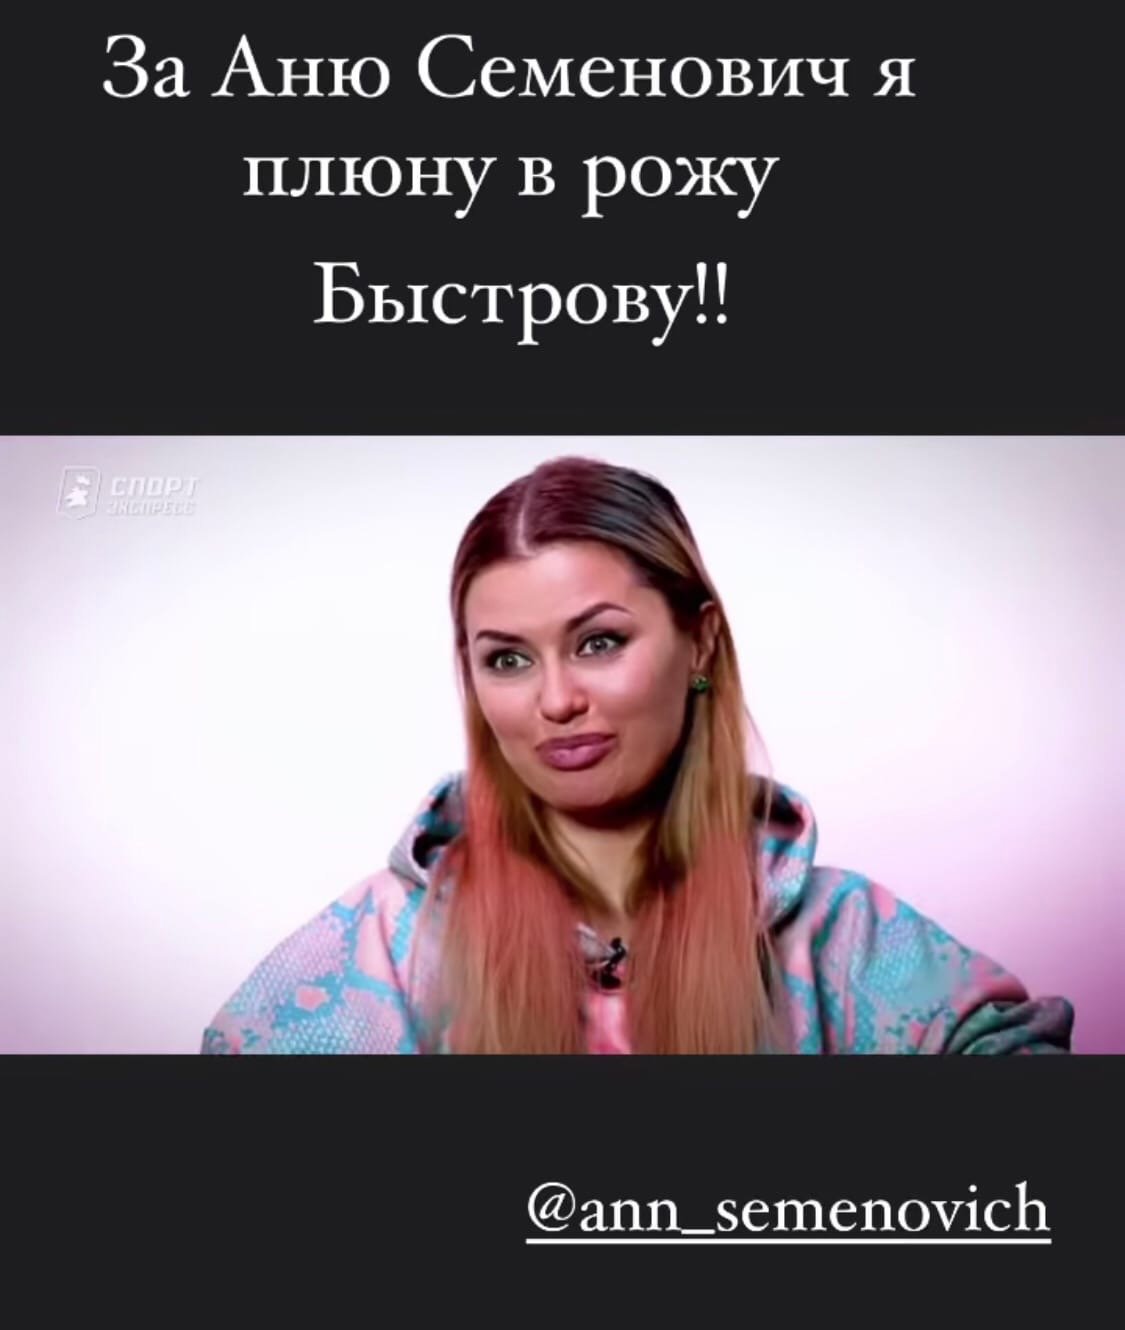 Виктория Боня заступилась за Анну Семенович